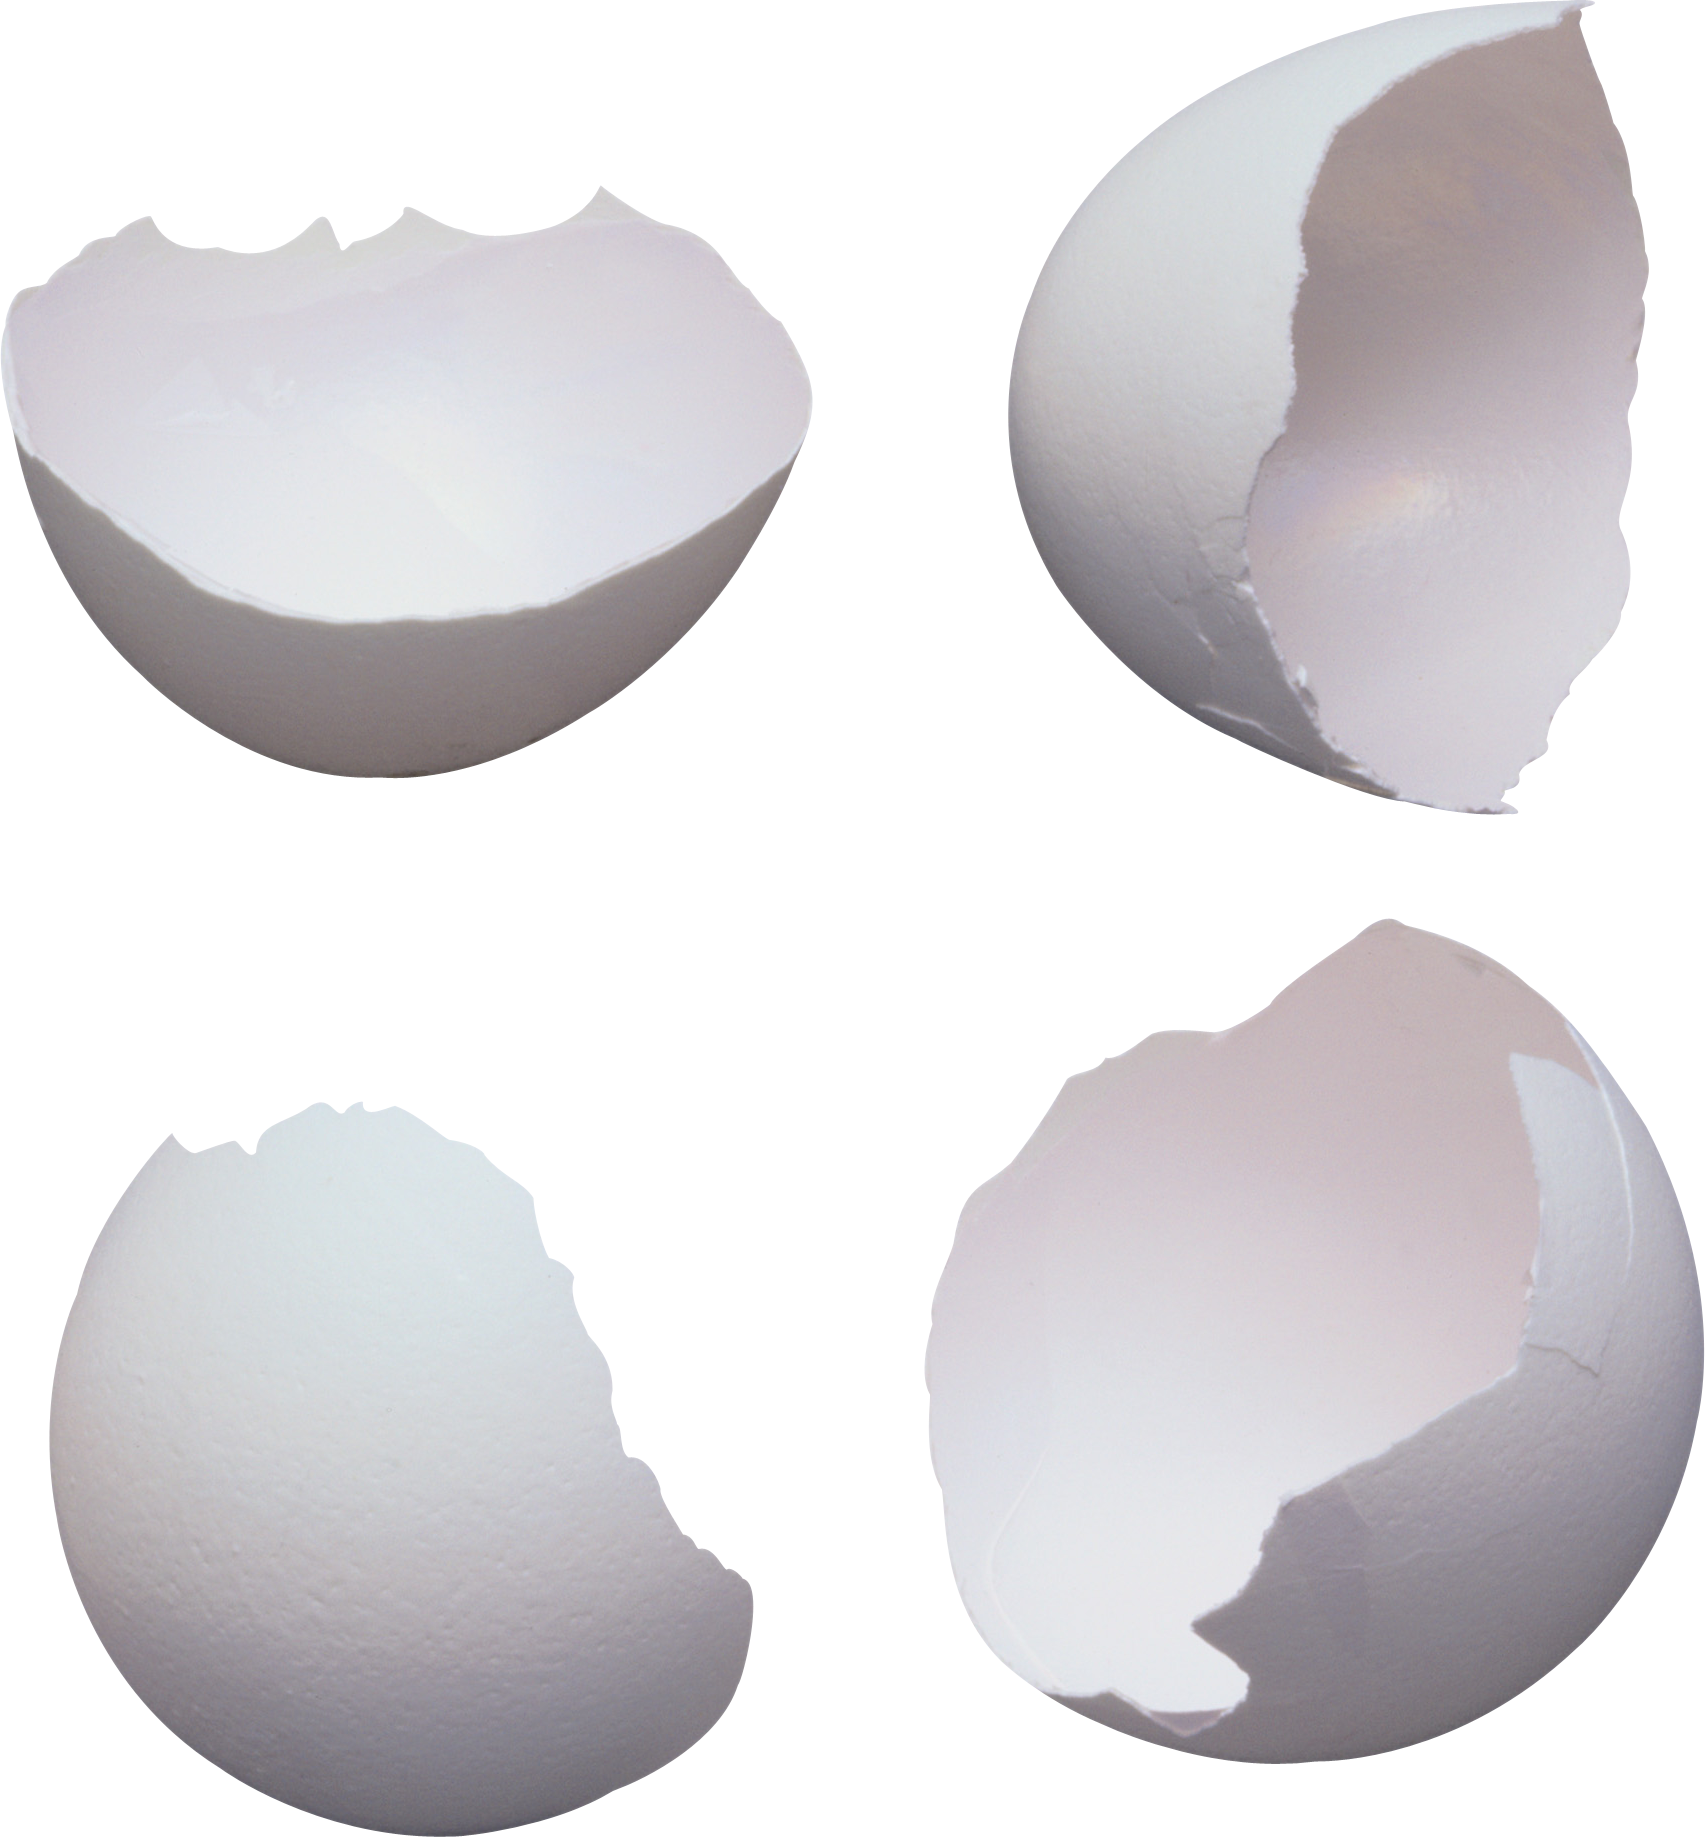 Guscio d'uovo